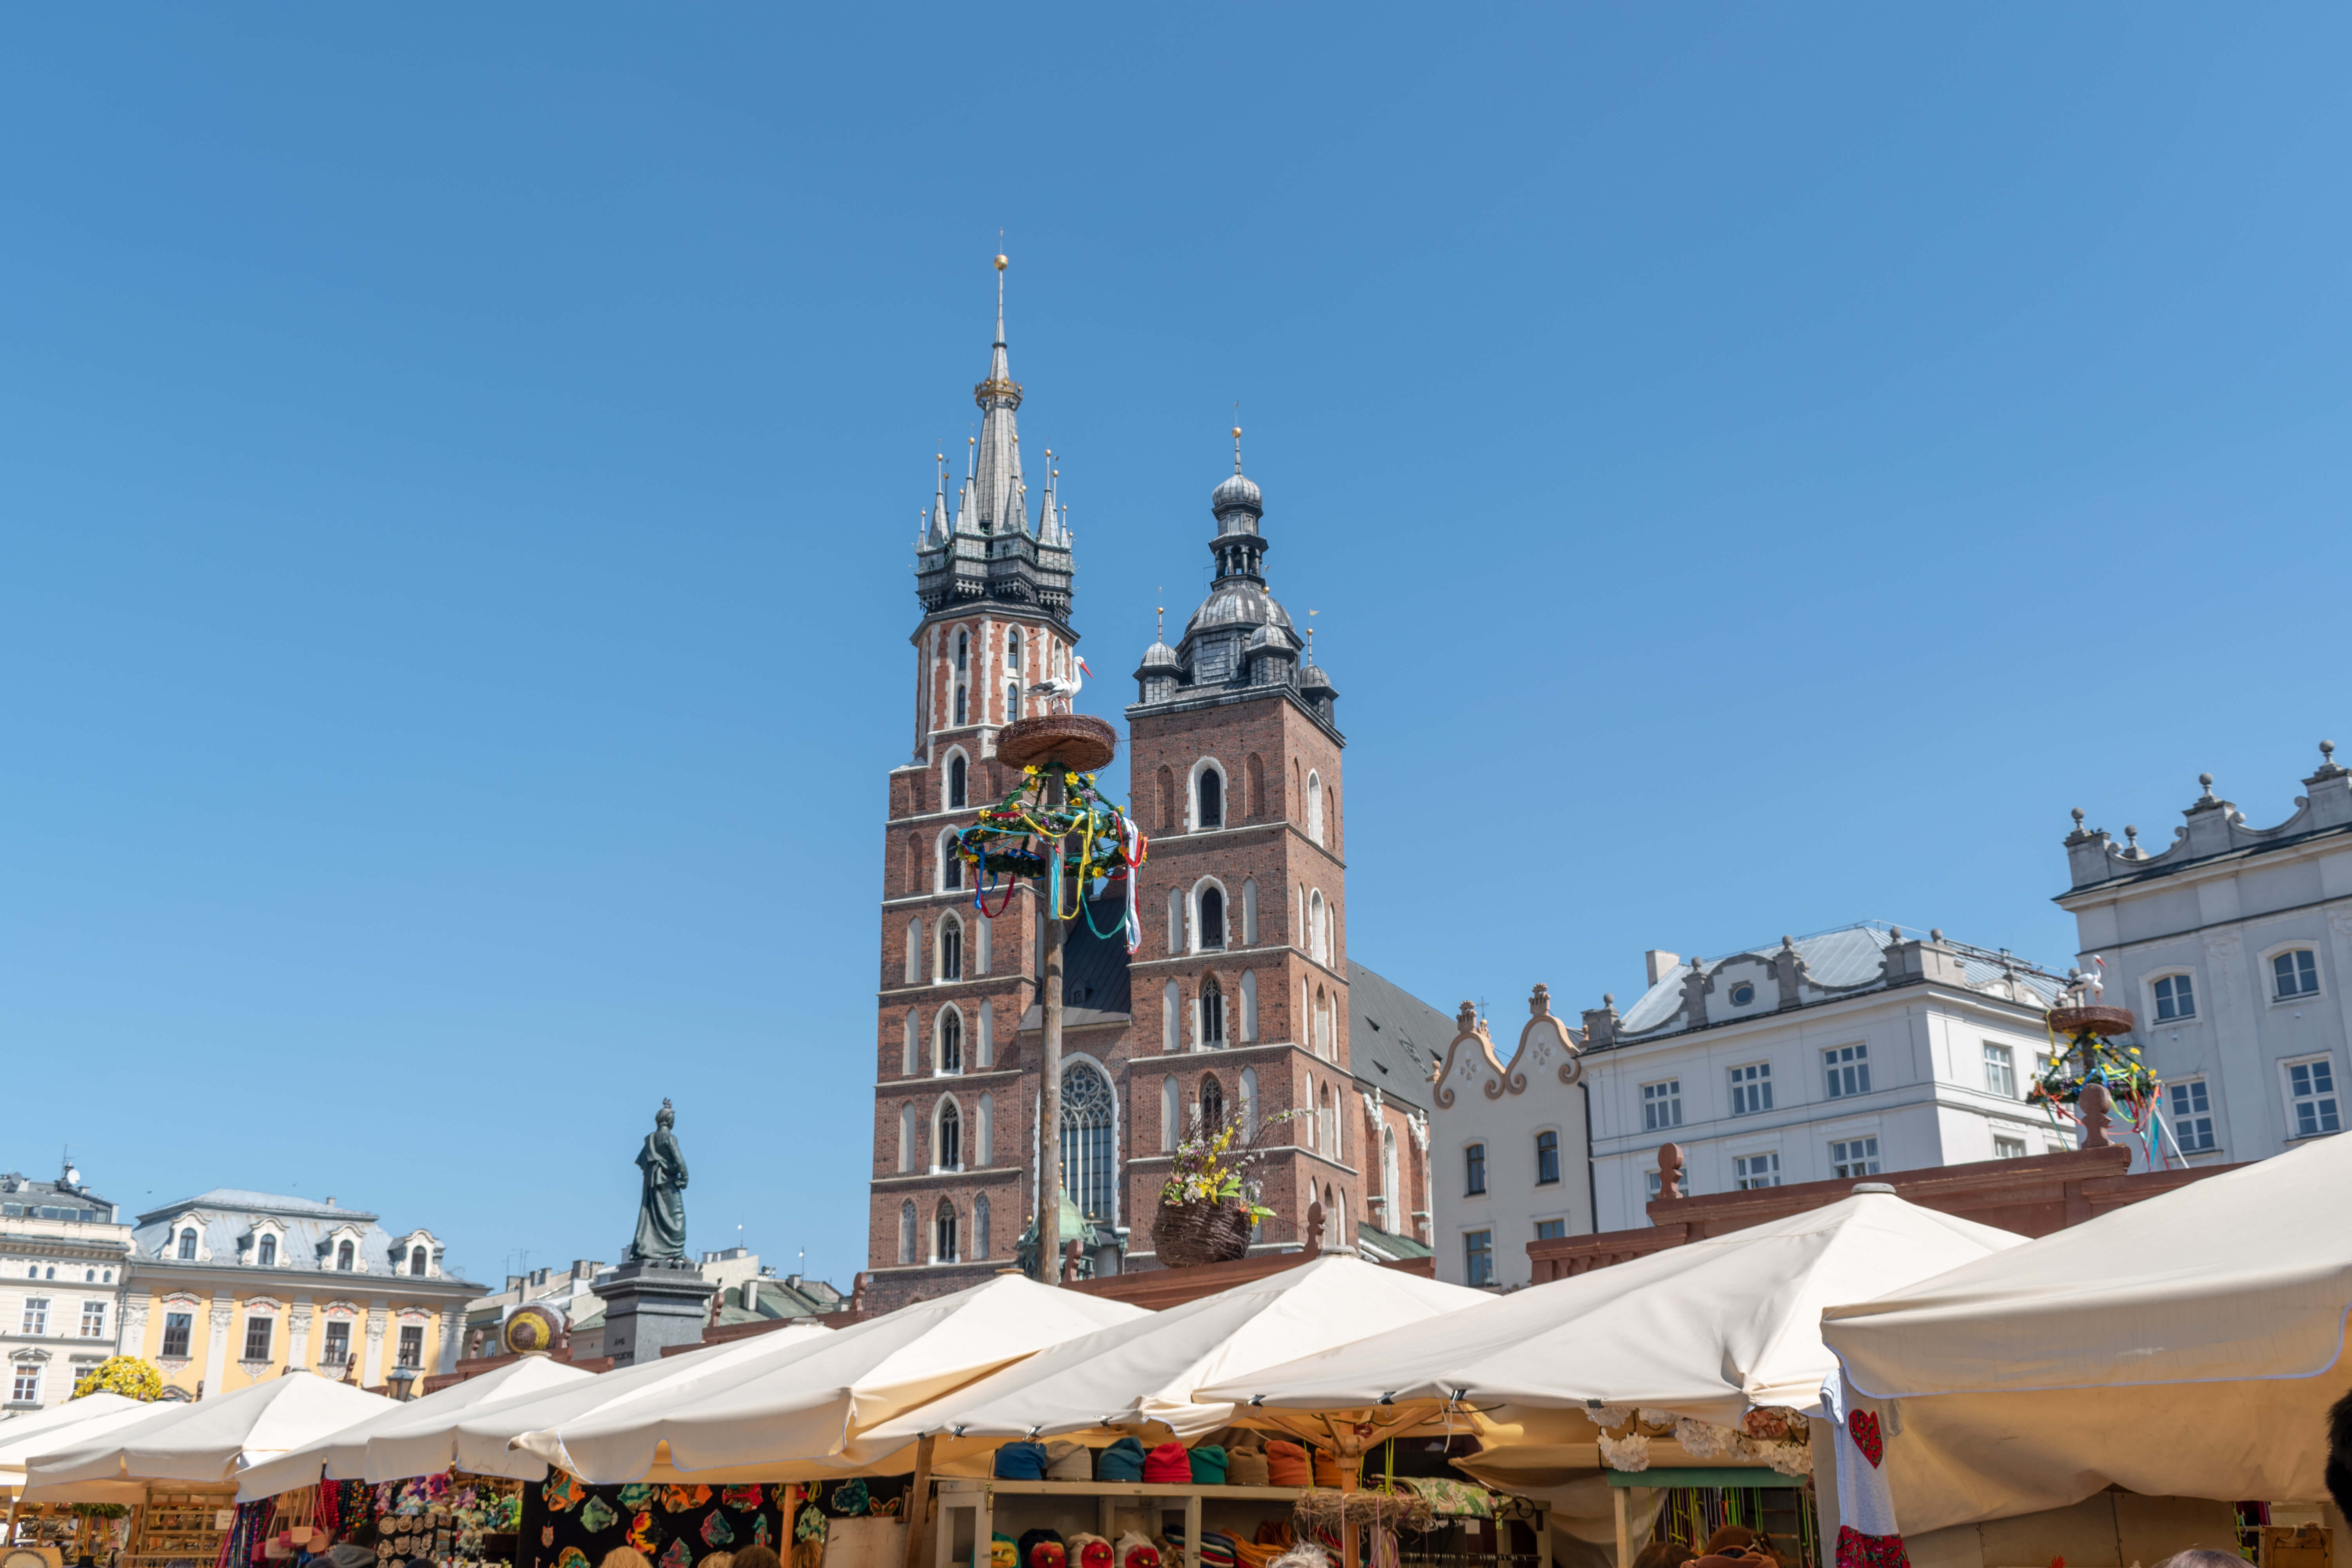 Krakow Easter market